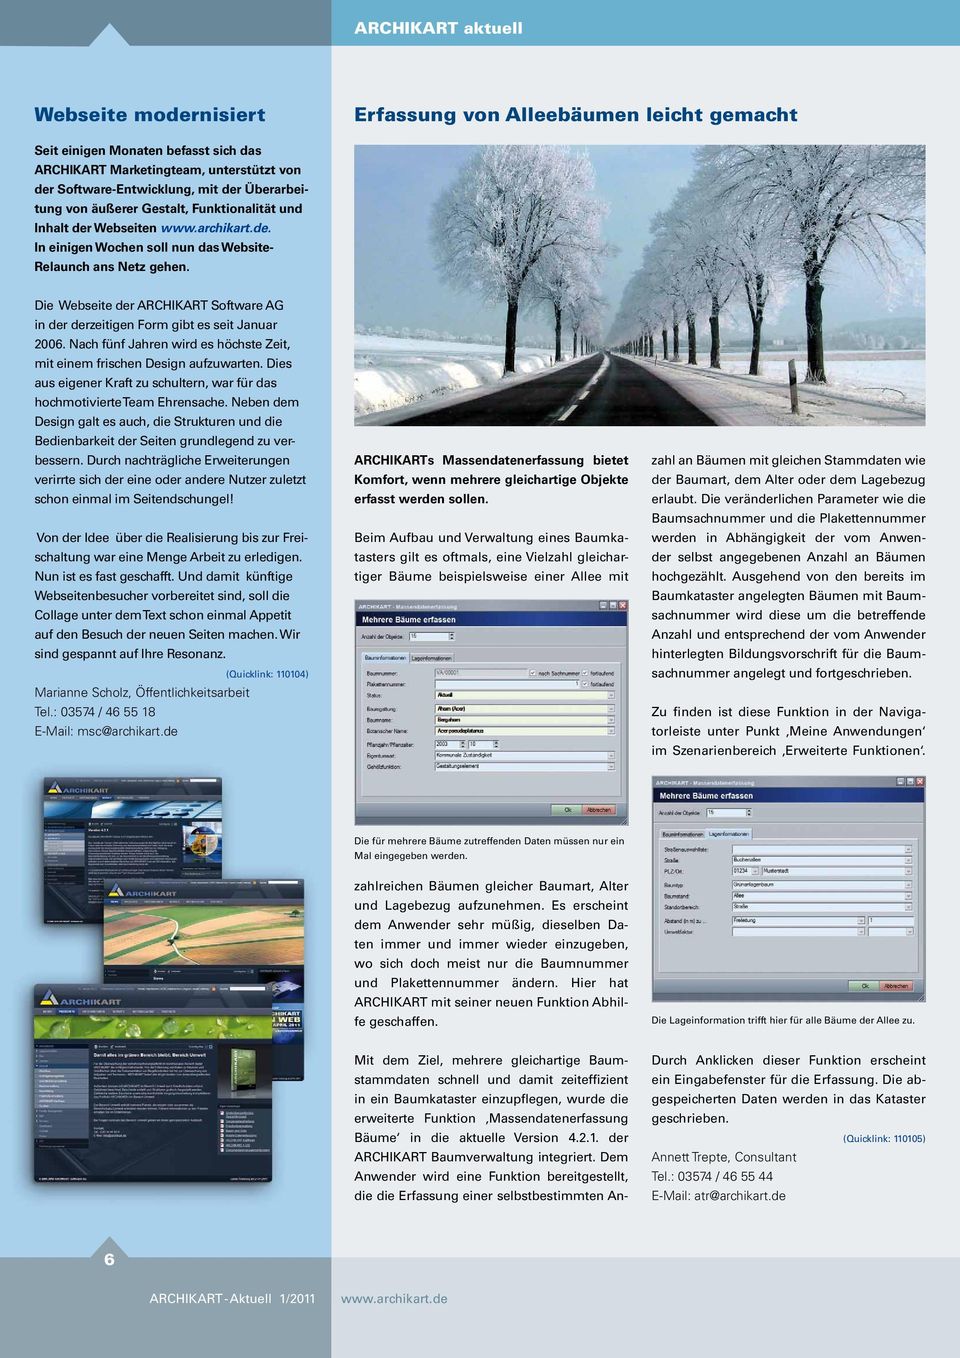 Die Webseite der ARCHIKART Software AG in der derzeitigen Form gibt es seit Januar 2006. Nach fünf Jahren wird es höchste Zeit, mit einem frischen Design aufzuwarten.